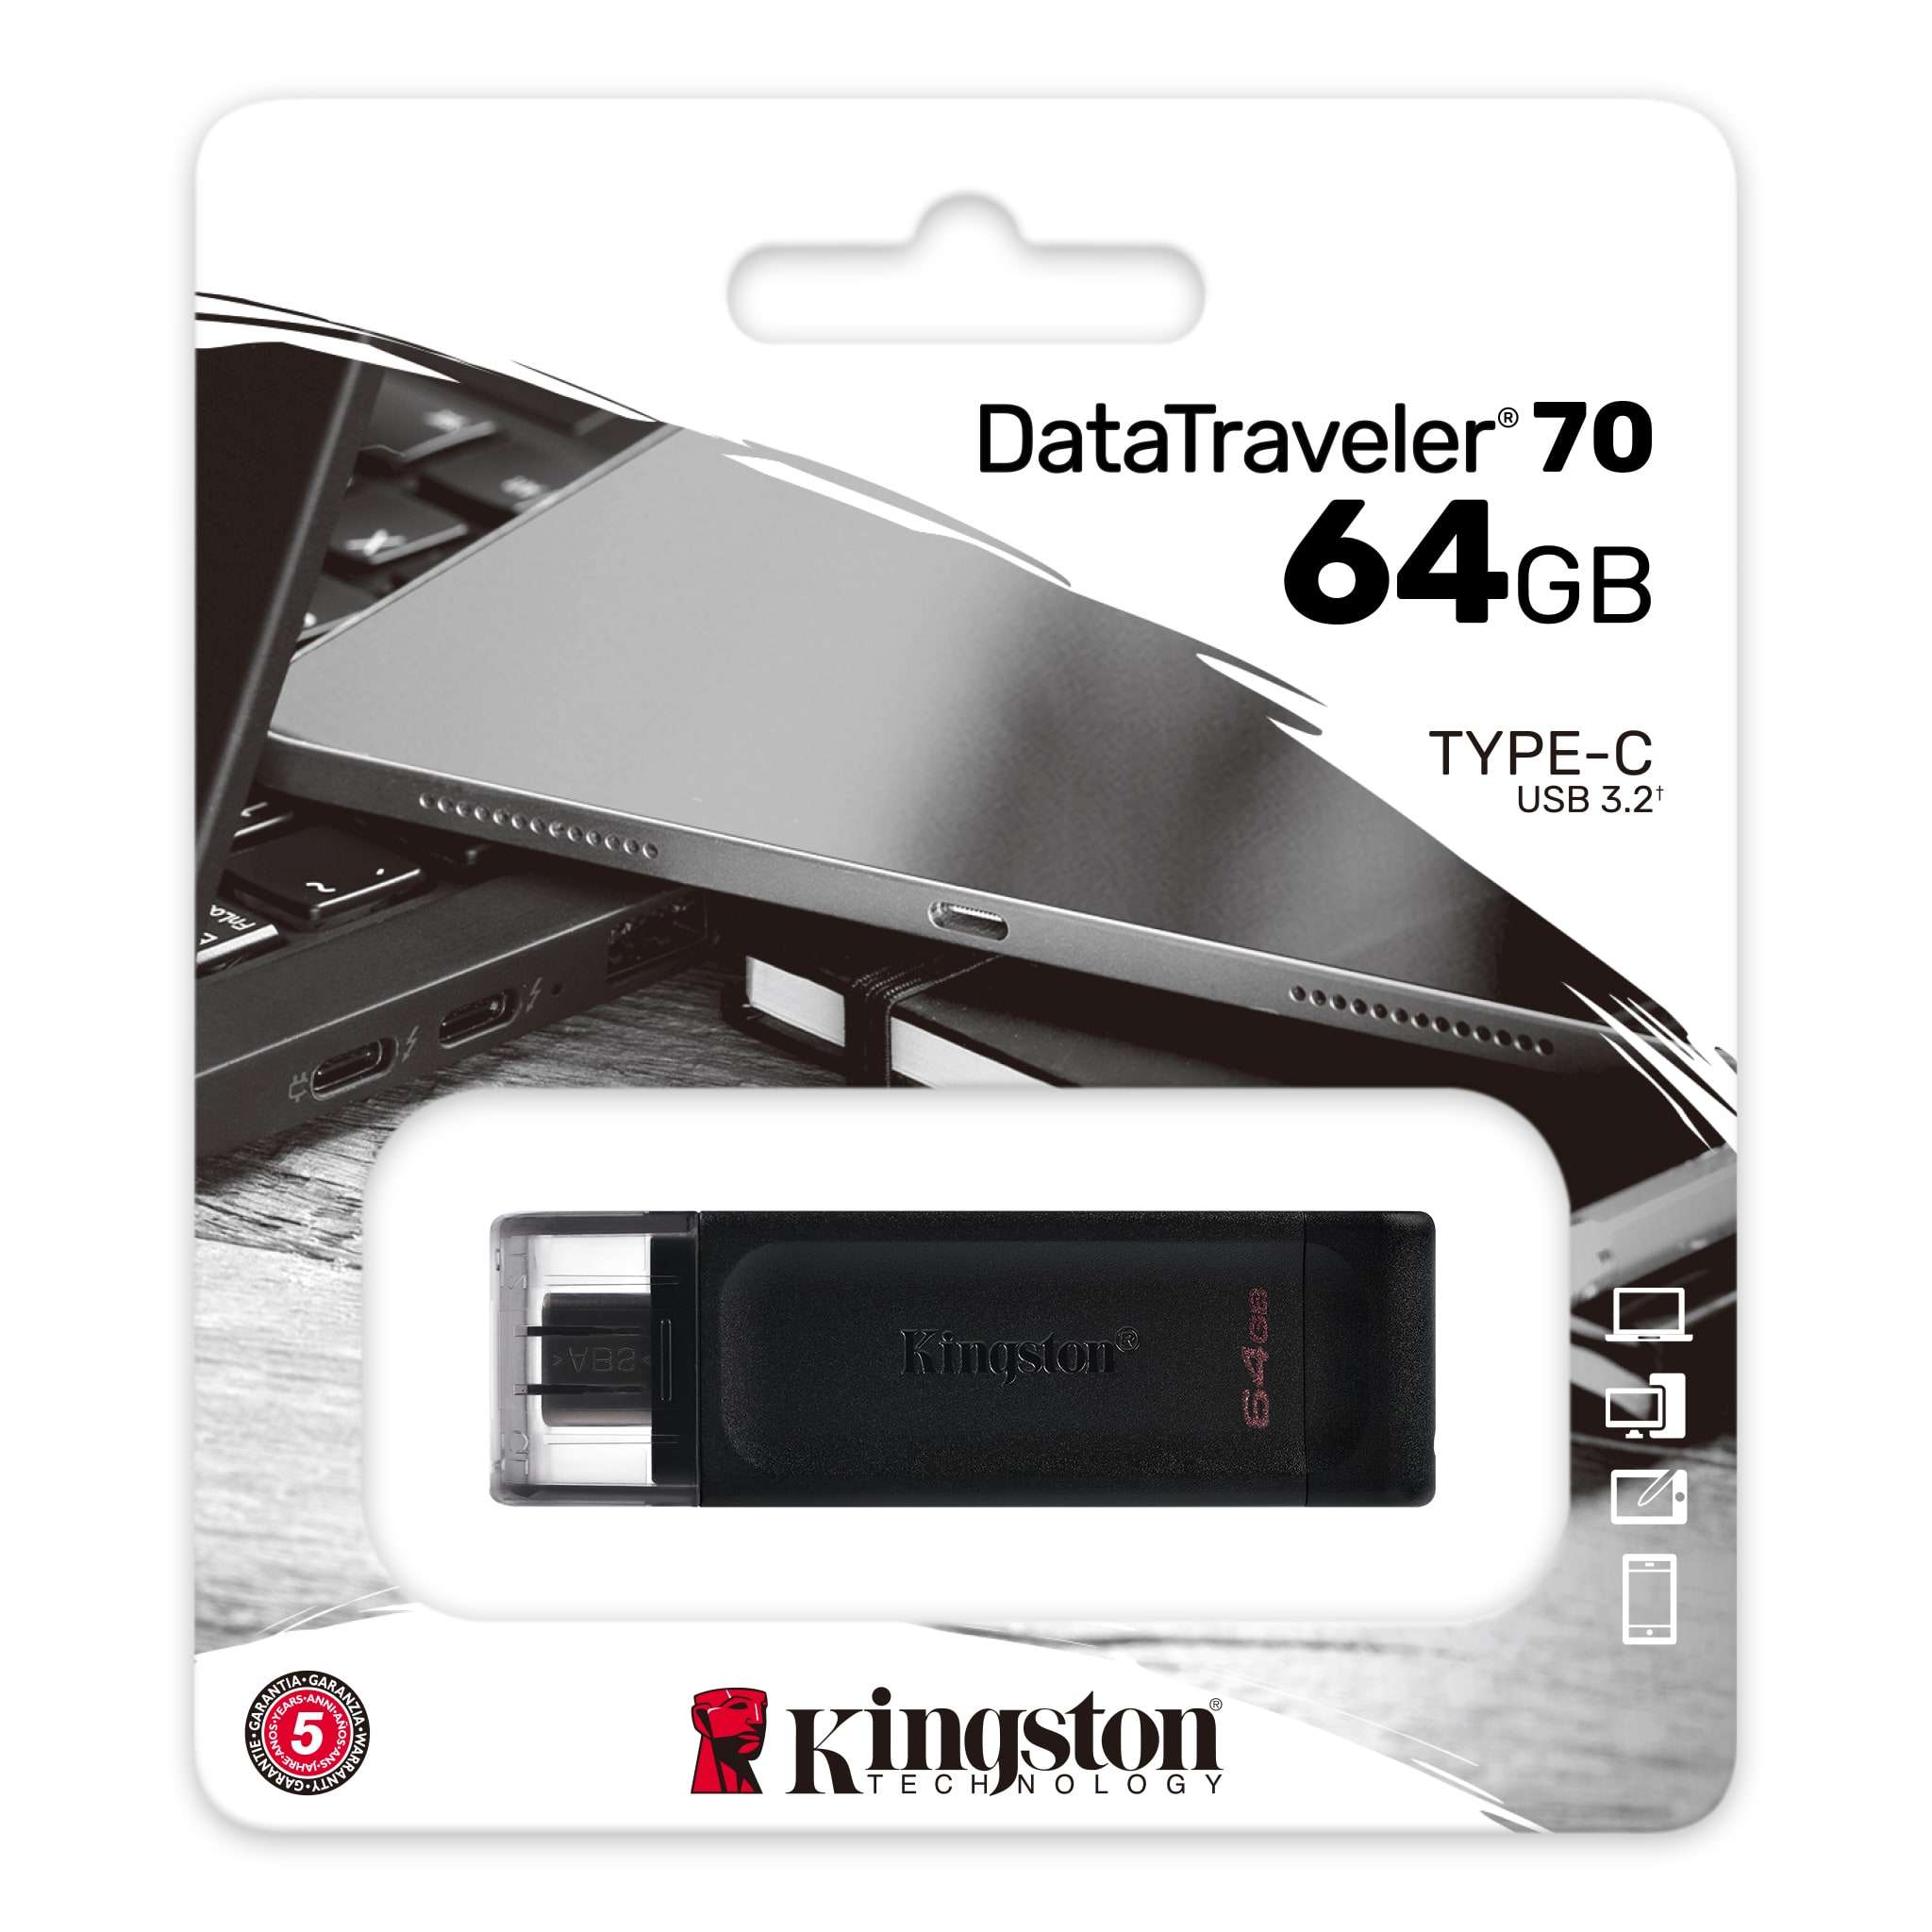 DT70-64GB – KINGSTON DATATRAVELER 70.03